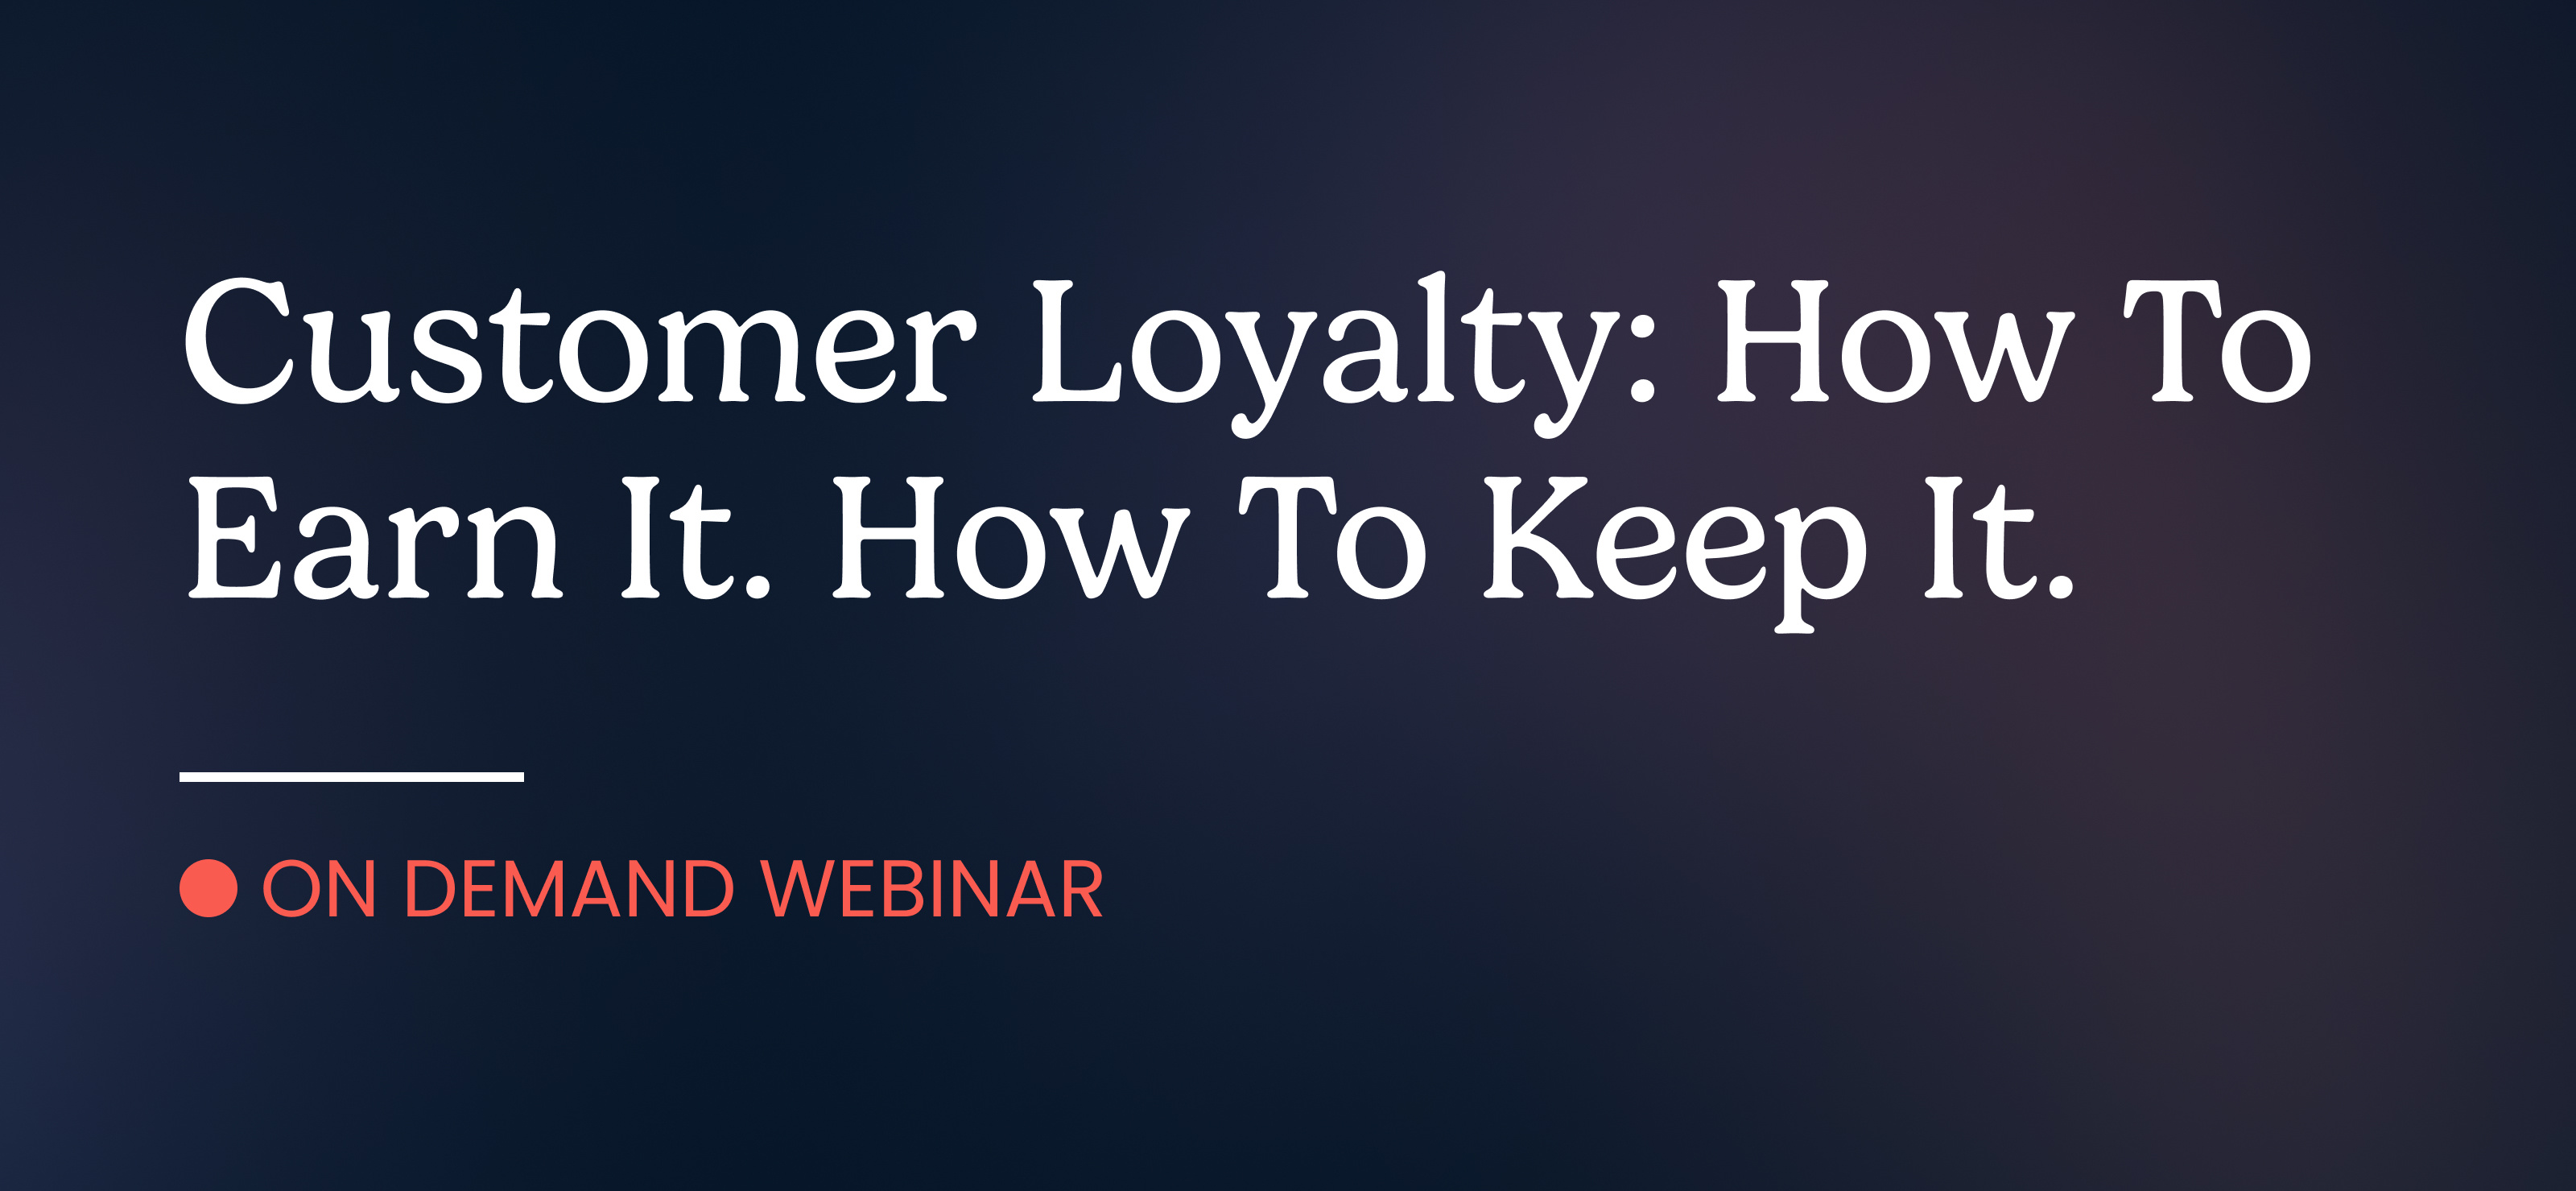 Customer loyalty webinar